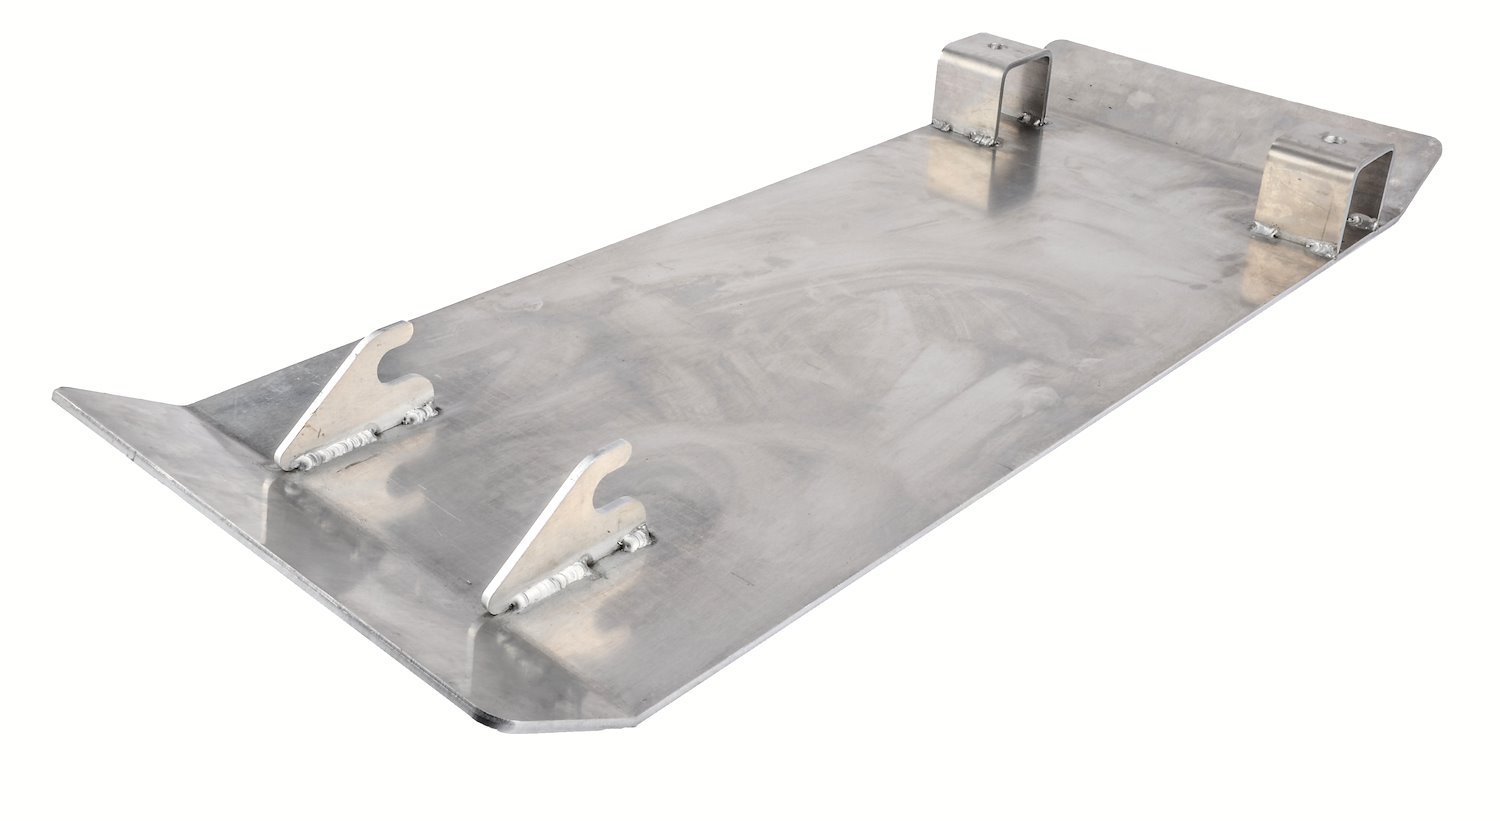 Floor Jack Skid Plate for JEGS 555-80006 Floor Jack [Ideal for work on Dirt, Gravel & Grass]